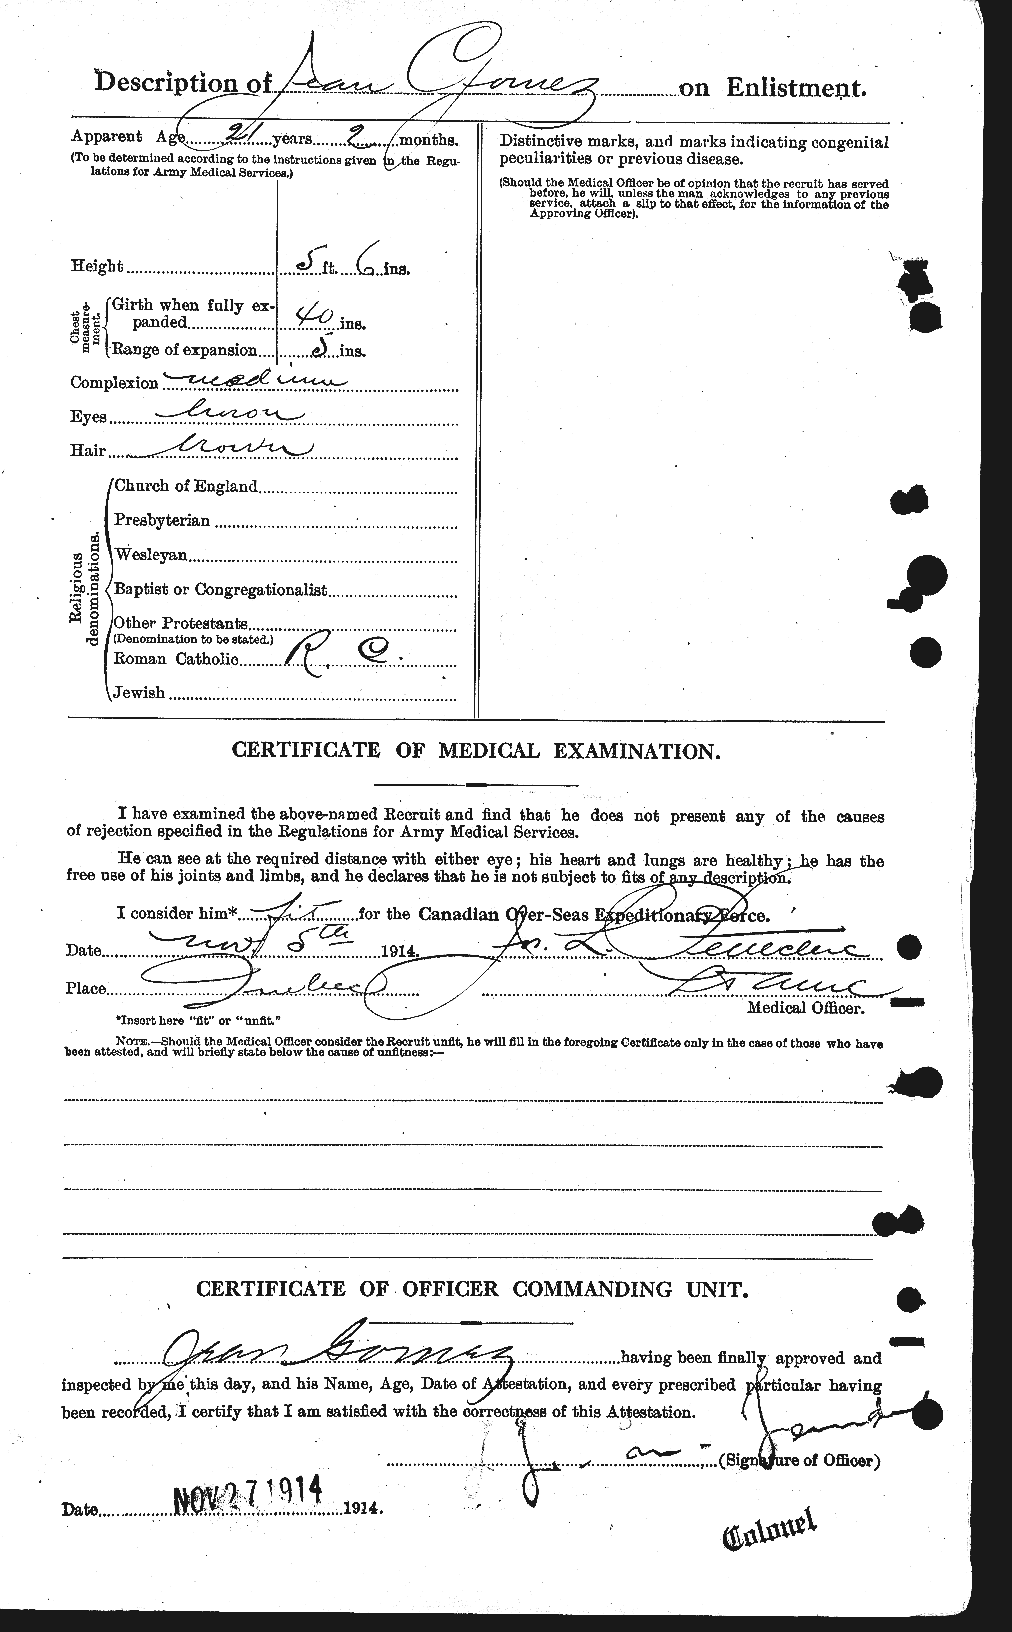 Dossiers du Personnel de la Première Guerre mondiale - CEC 354840b